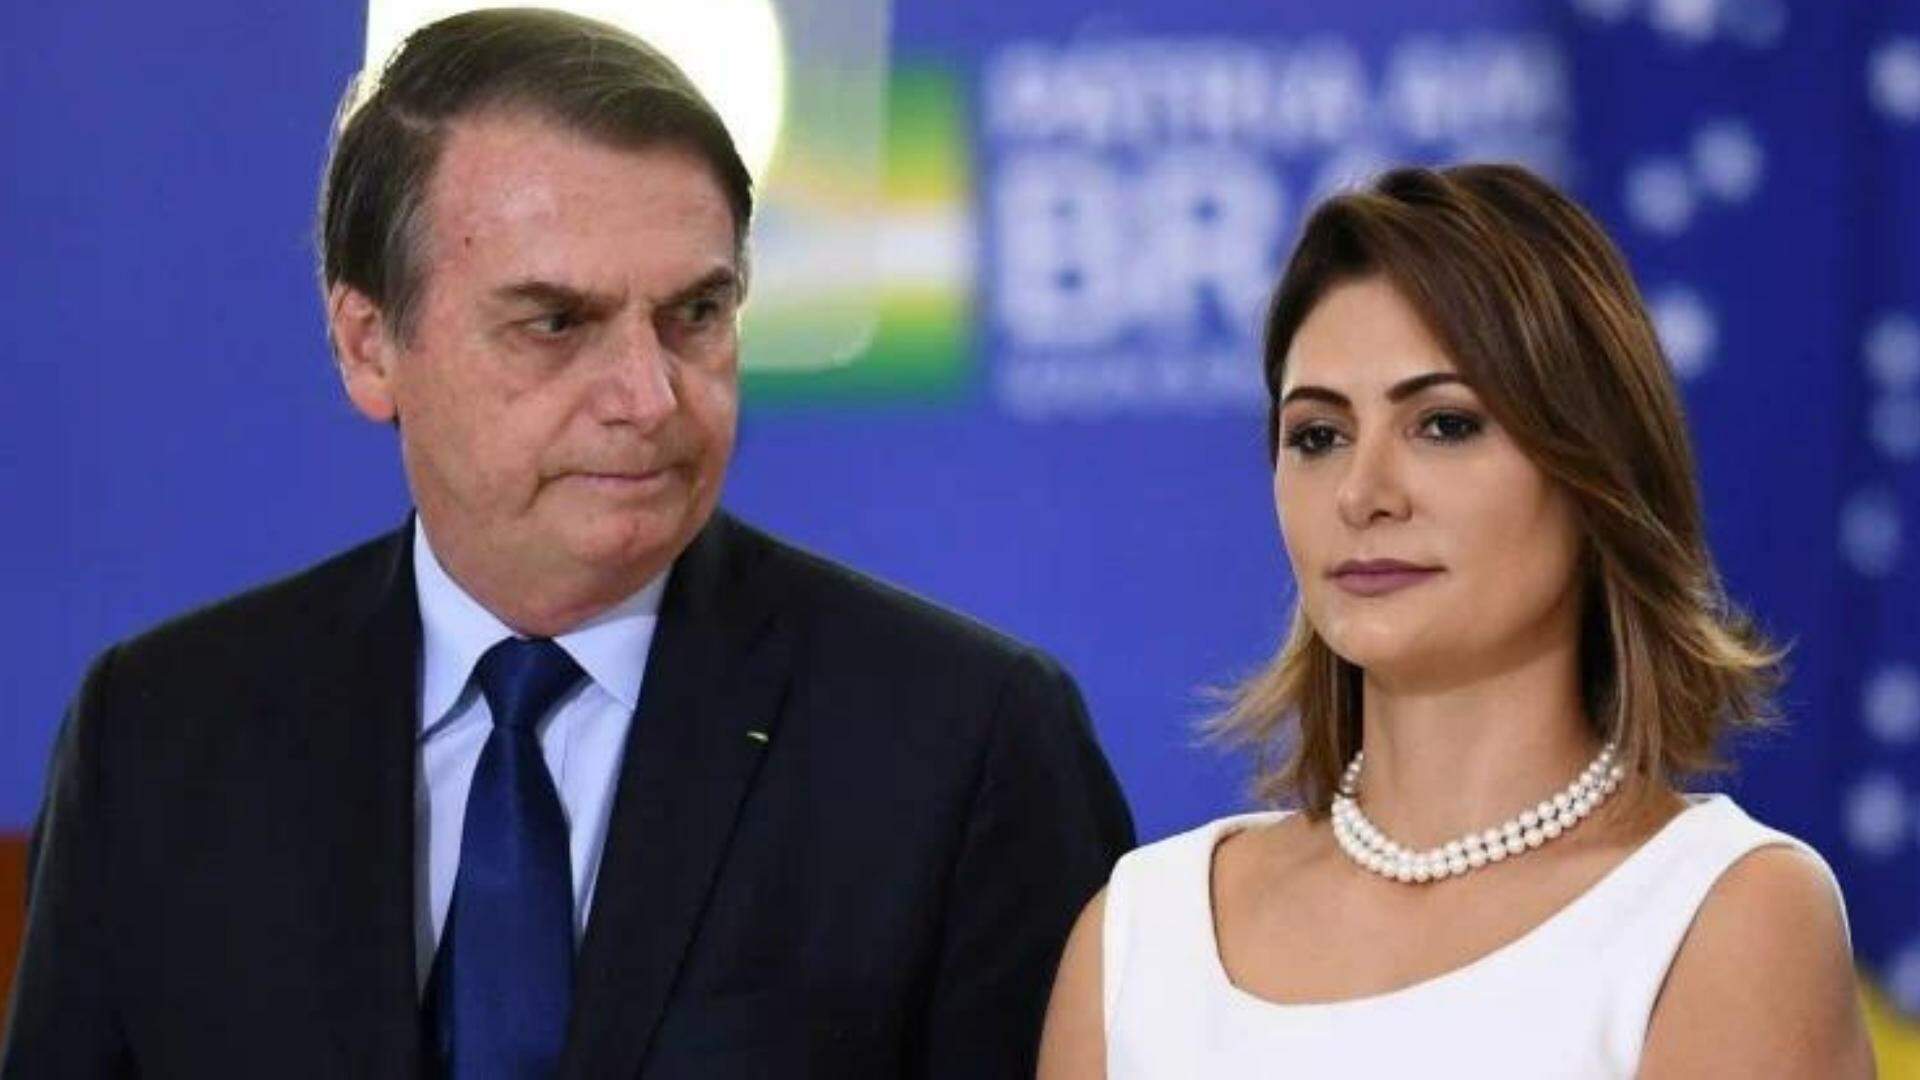 Após boatos de uma suposta separação, Michelle Bolsonaro se pronuncia: “A verdade” - Metropolitana FM